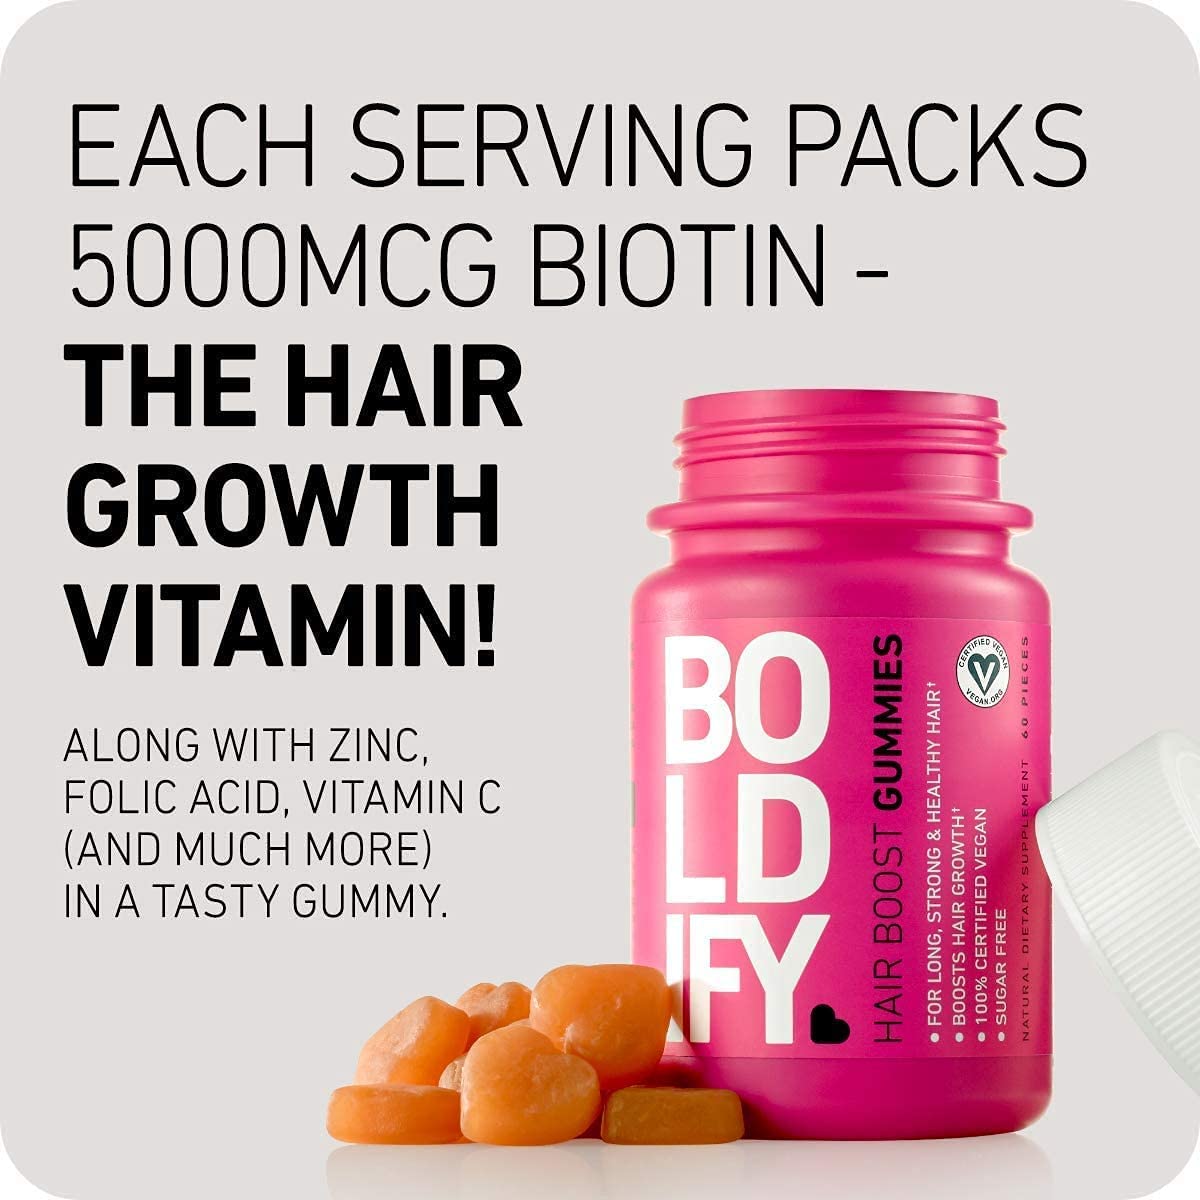 Boldify شامبو + بلسم + حزمة علكات الشعر ، الحجم ، شد الجذور ، الملمس ، البيوتين للاحتفاظ بالشعر